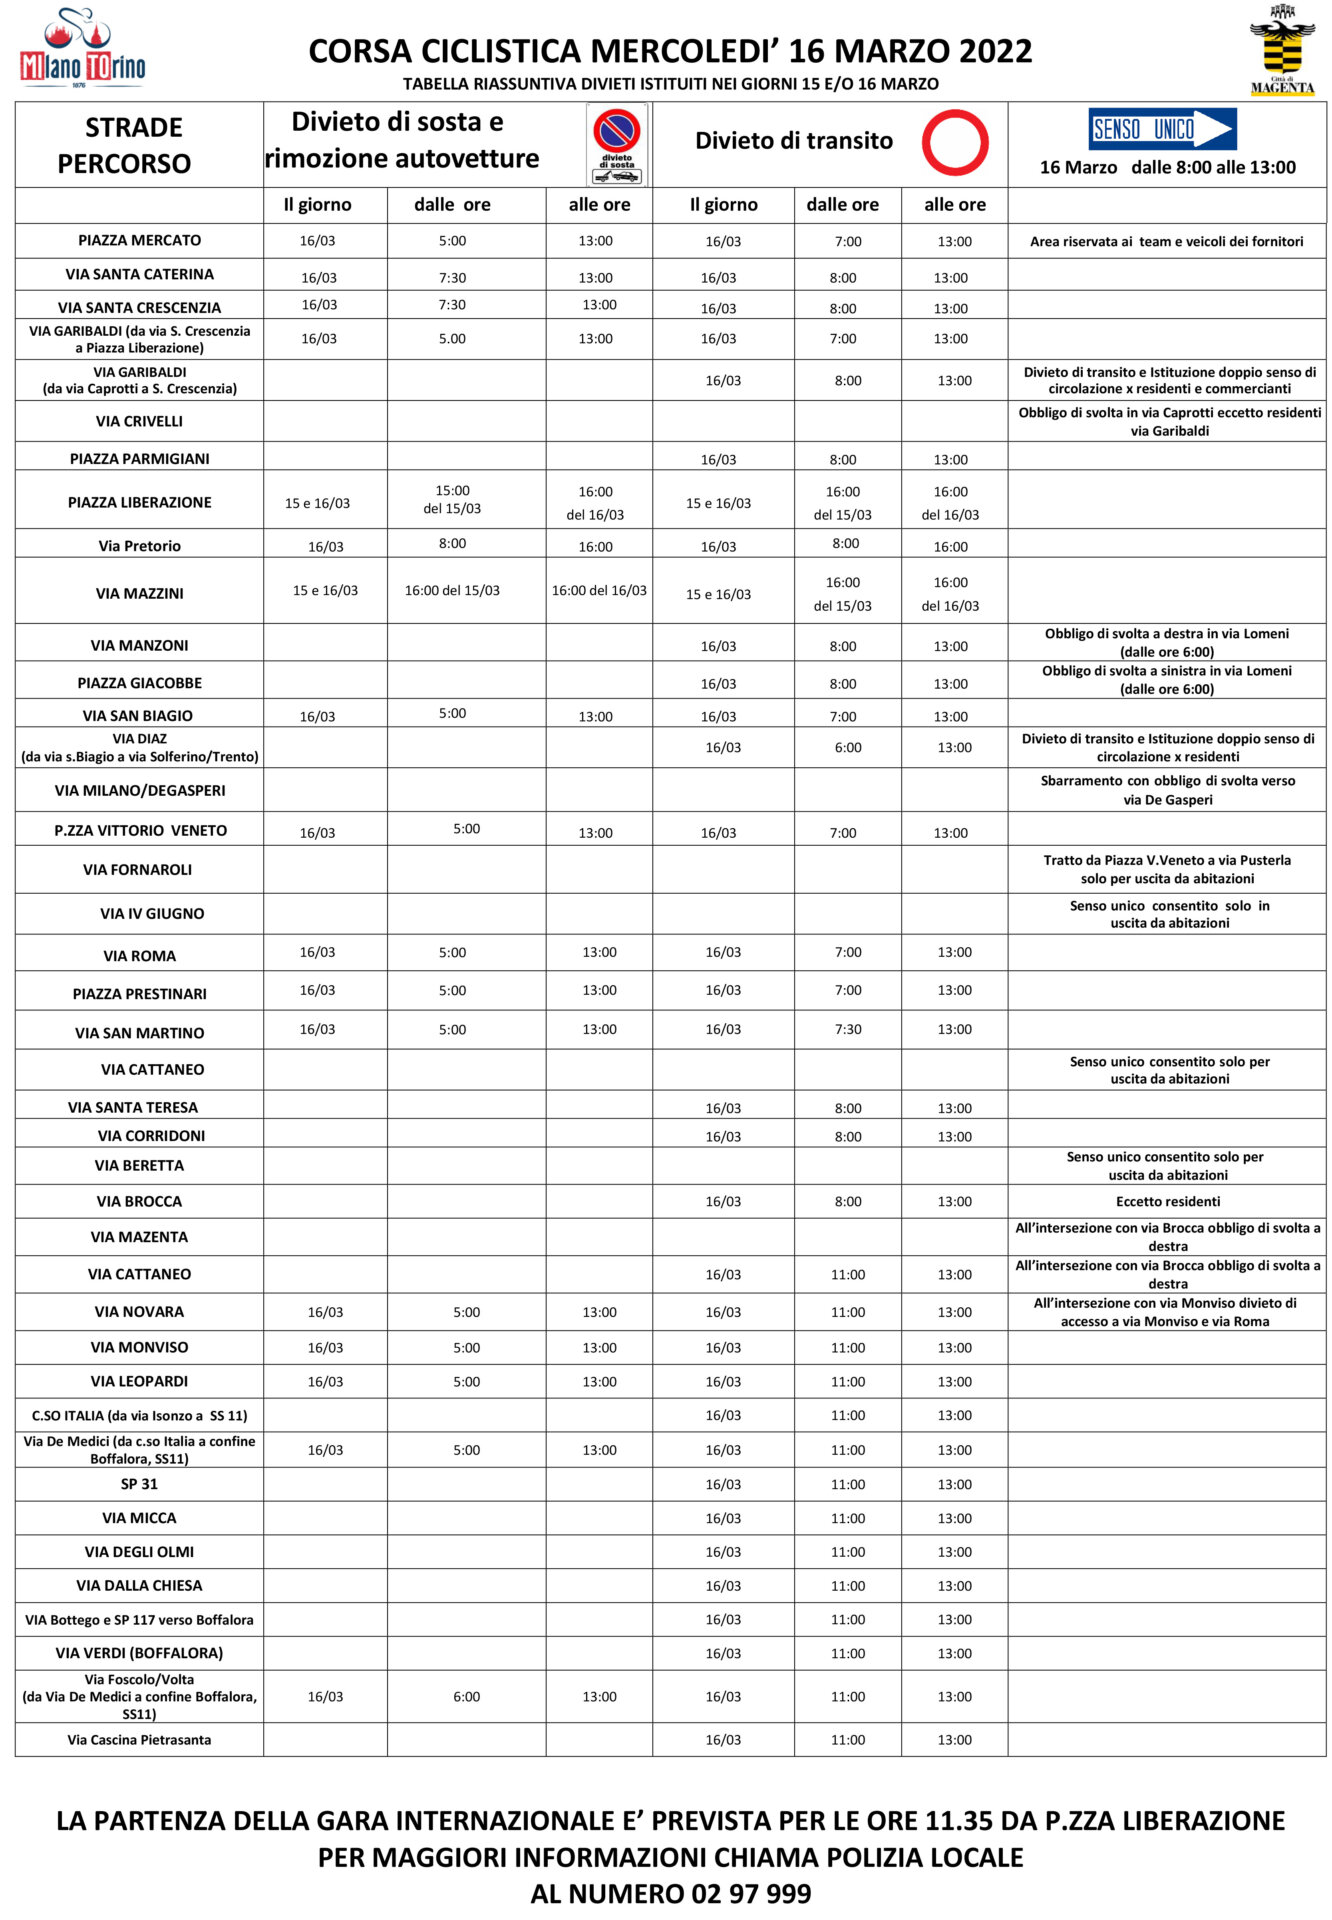 tabella divieti per milano torino 15 e 16 marzo 2022